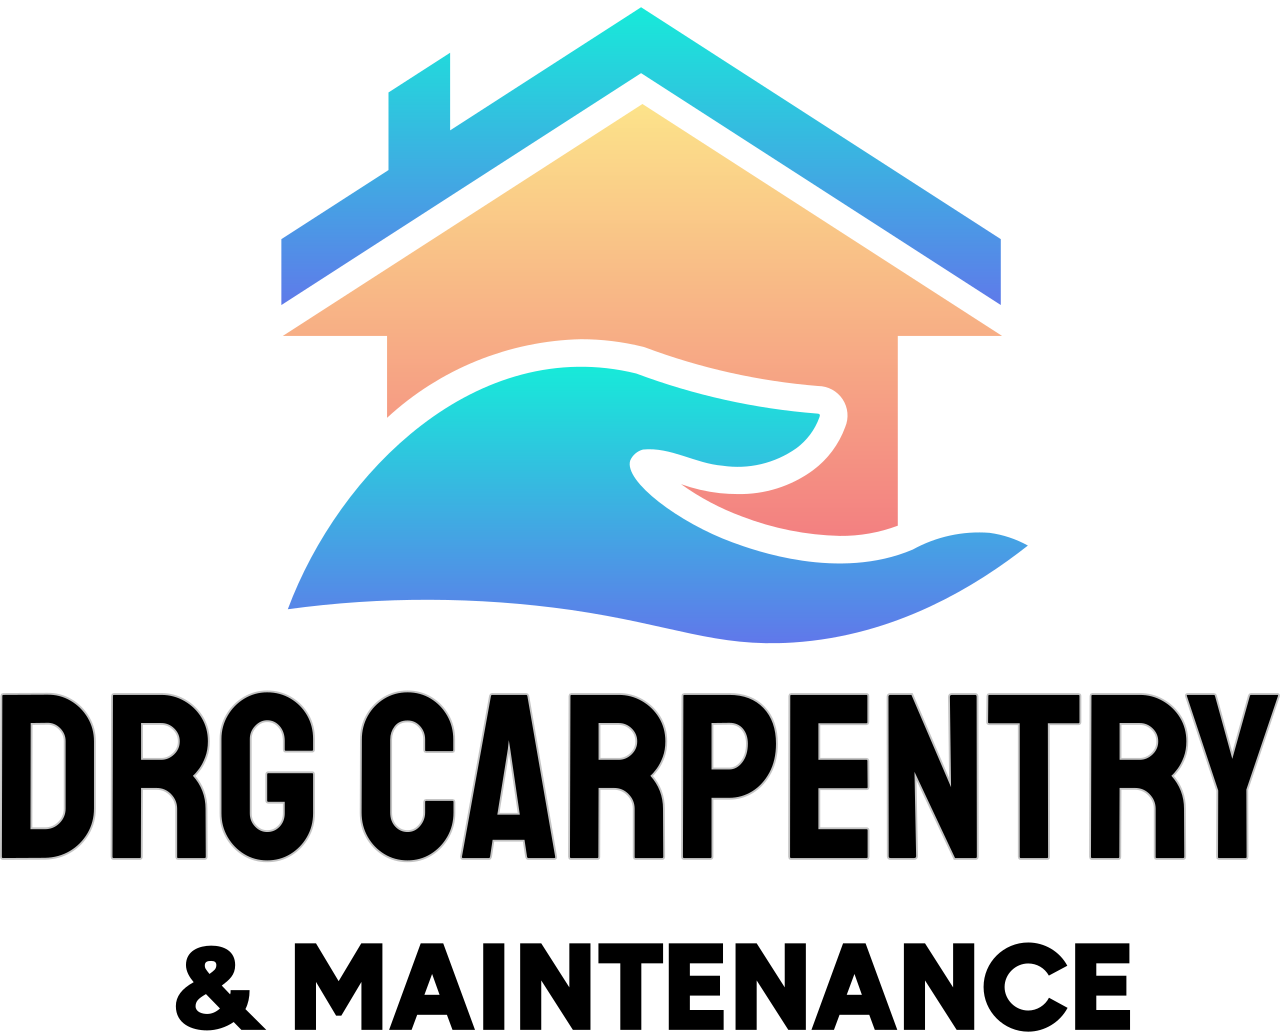 DRG CARPENTRY 's logo